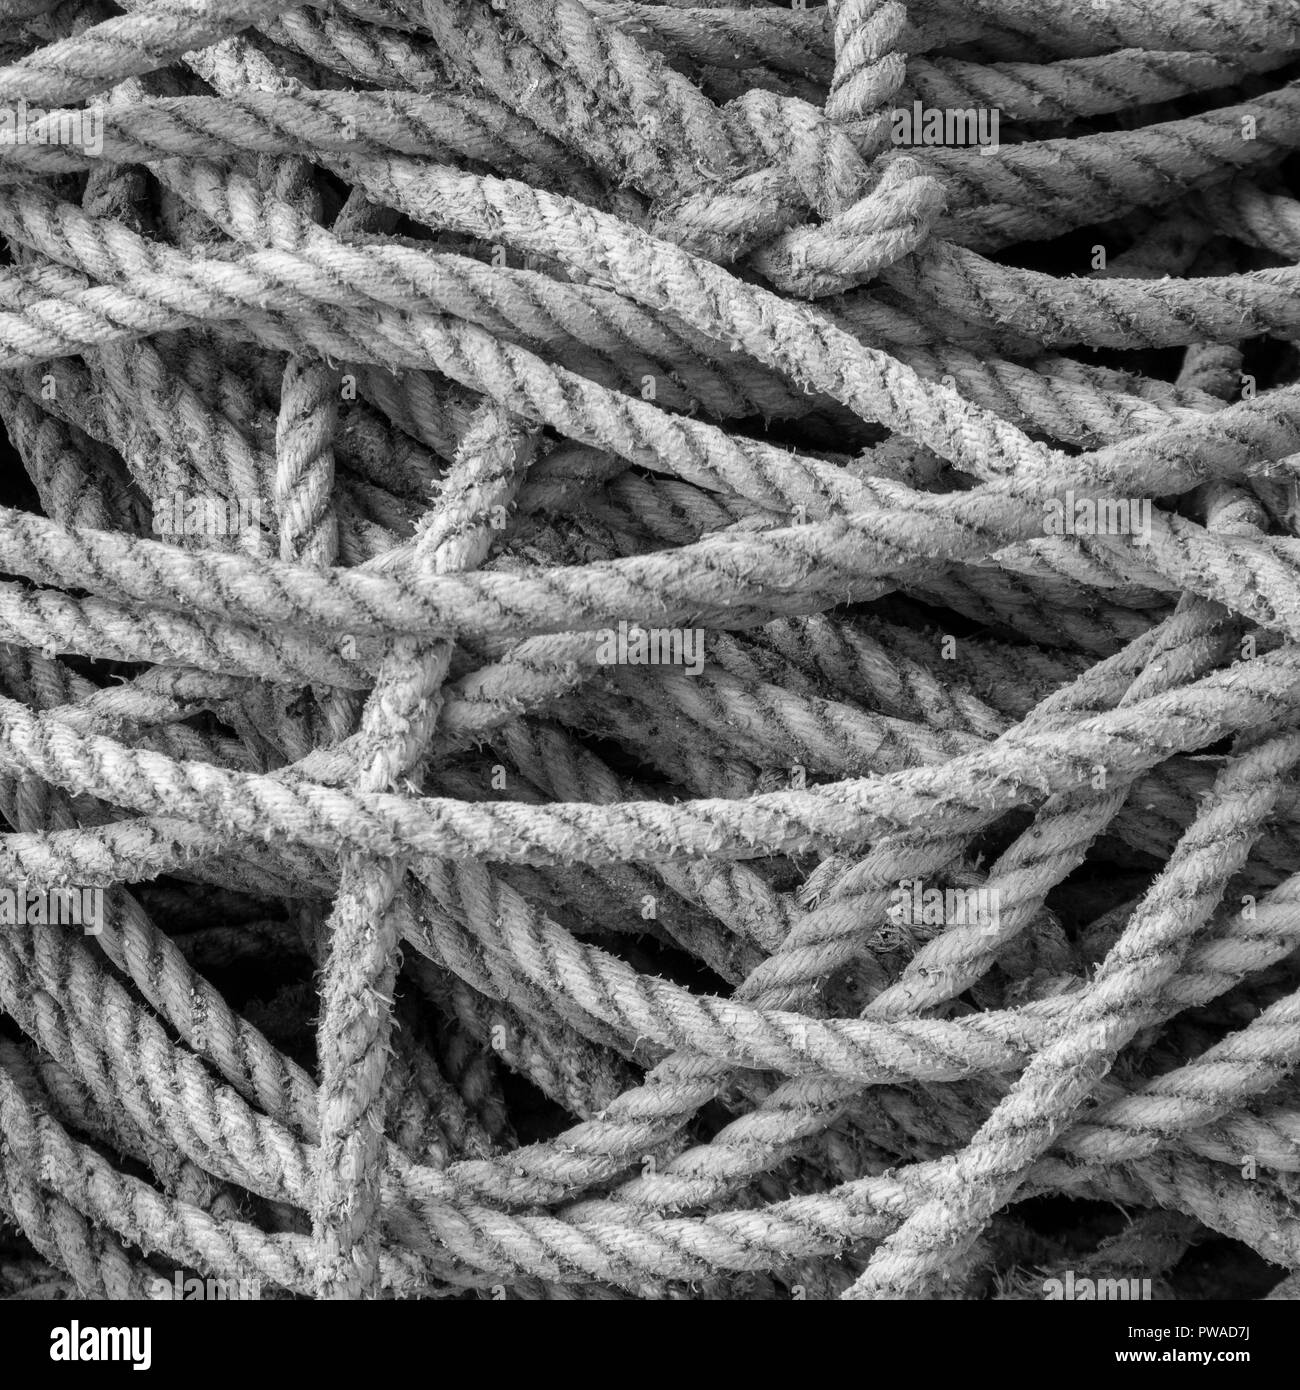 Versione in bianco e nero dell'immagine a colori, di una pila di corde di pescatori. Metafora 'data abbastanza corda', aggrovigliamento. Foto Stock